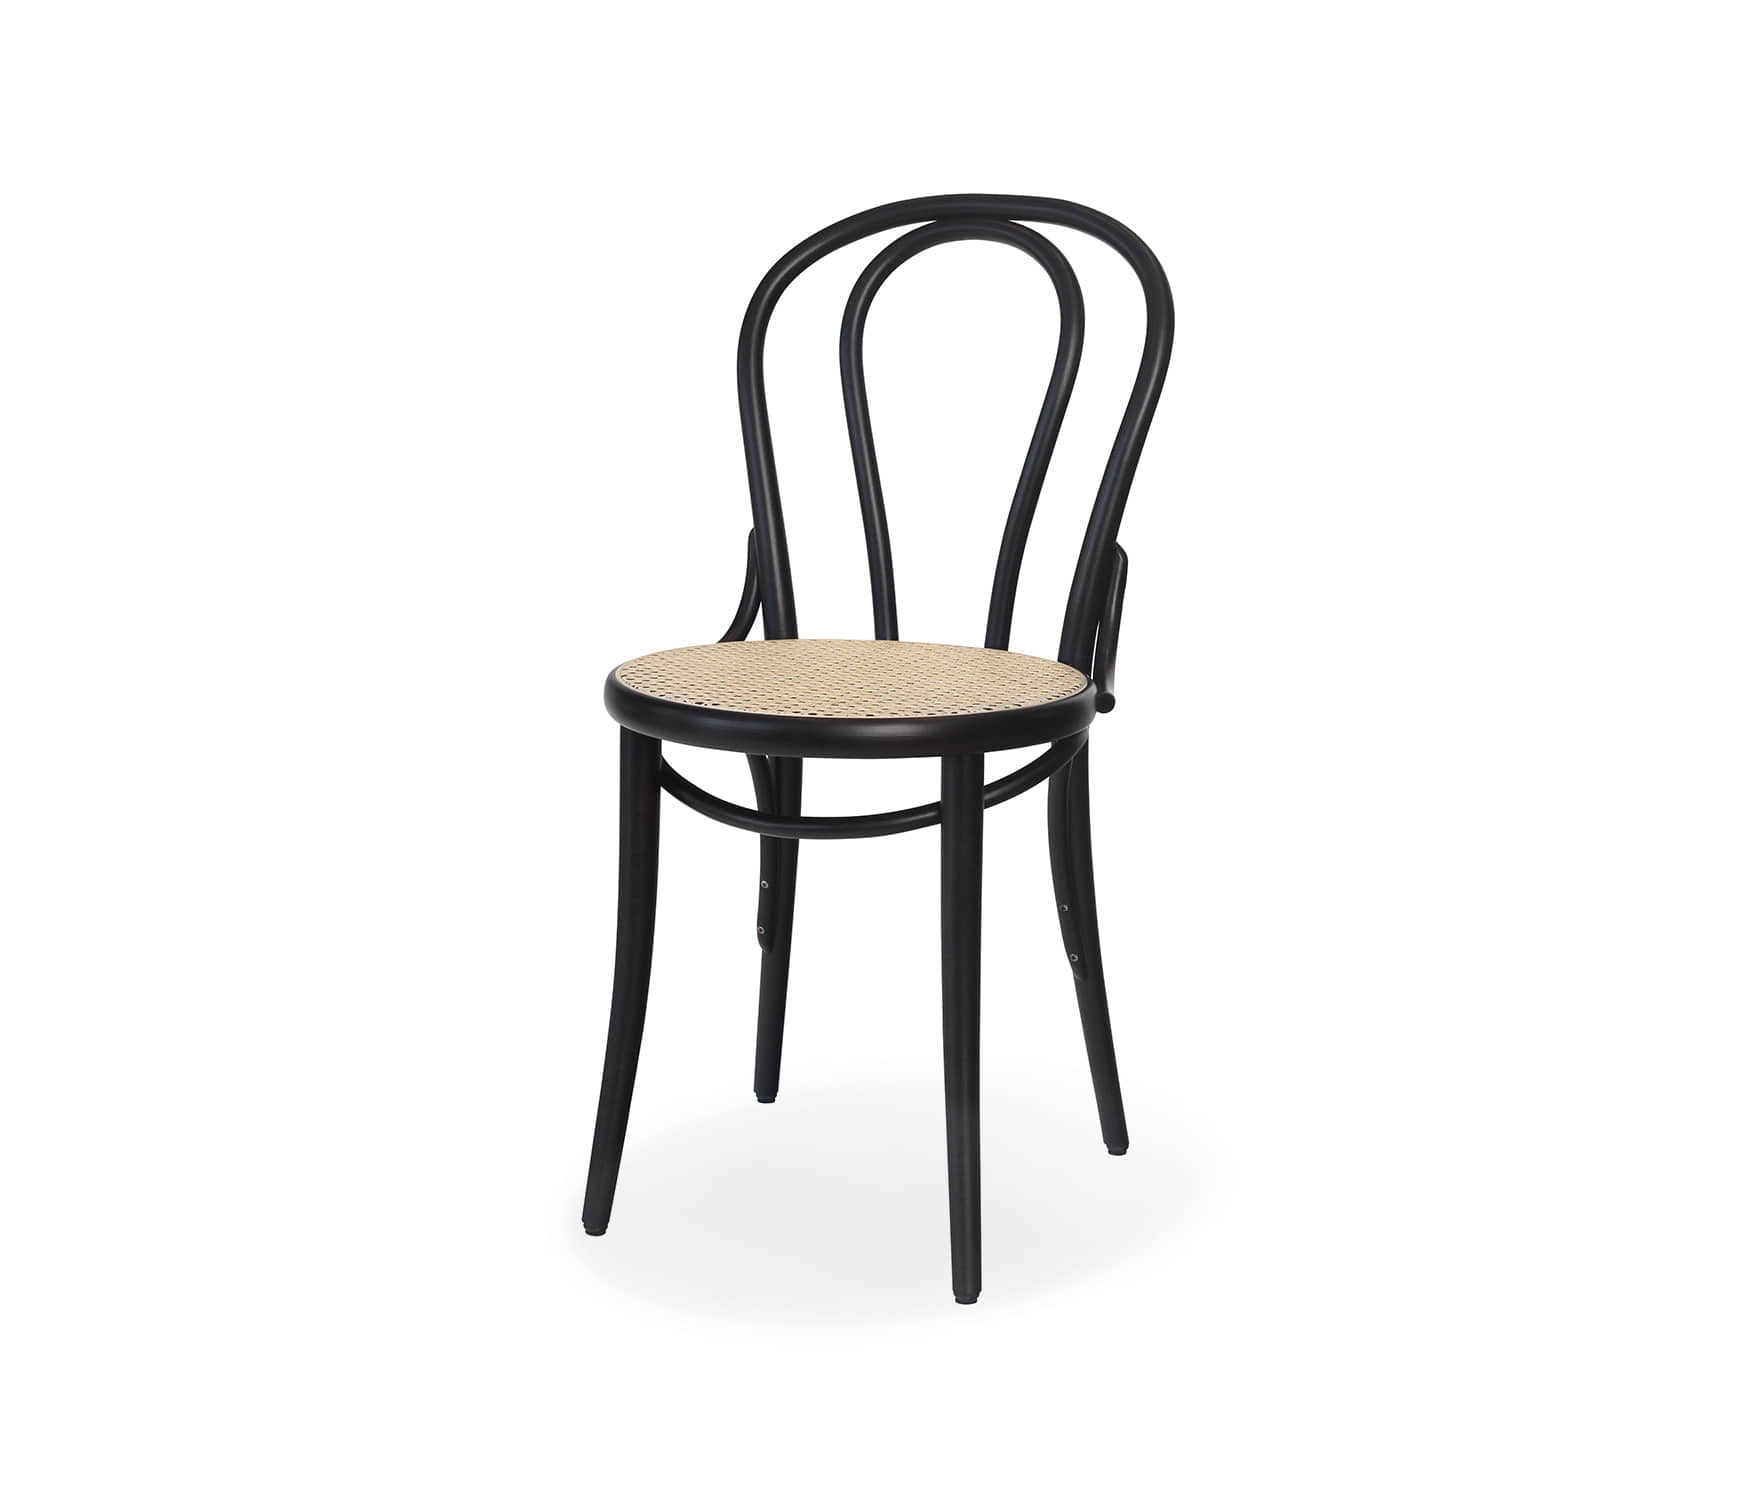 Chair 18 - Dark Wenge/Cane